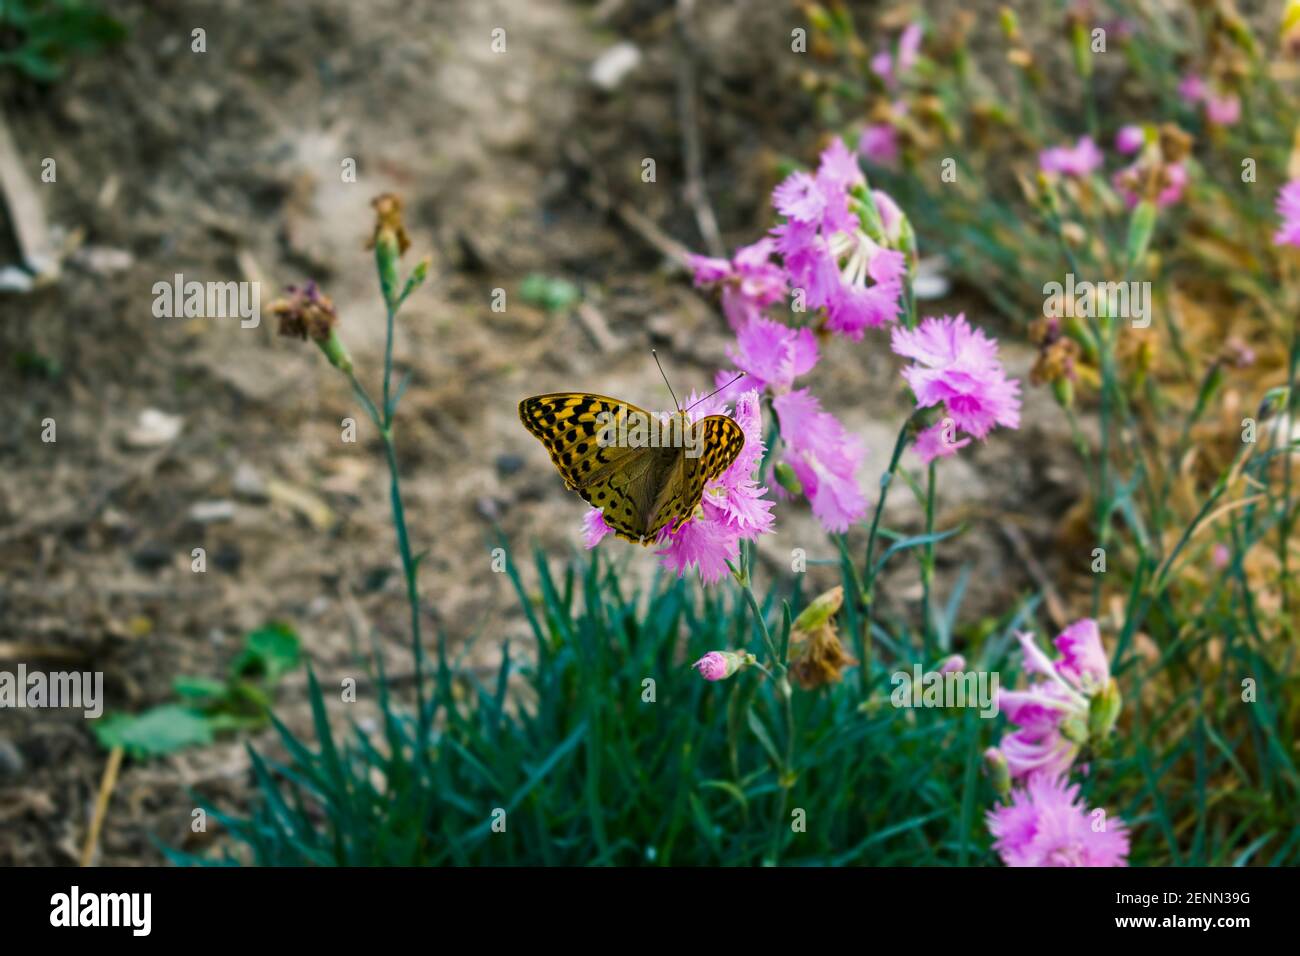 Mariposa monarca en una flor púrpura. Insectos suaves y elegantes que se alimentan de las flores. El concepto de serenidad, armonía, calma y armonía Foto de stock